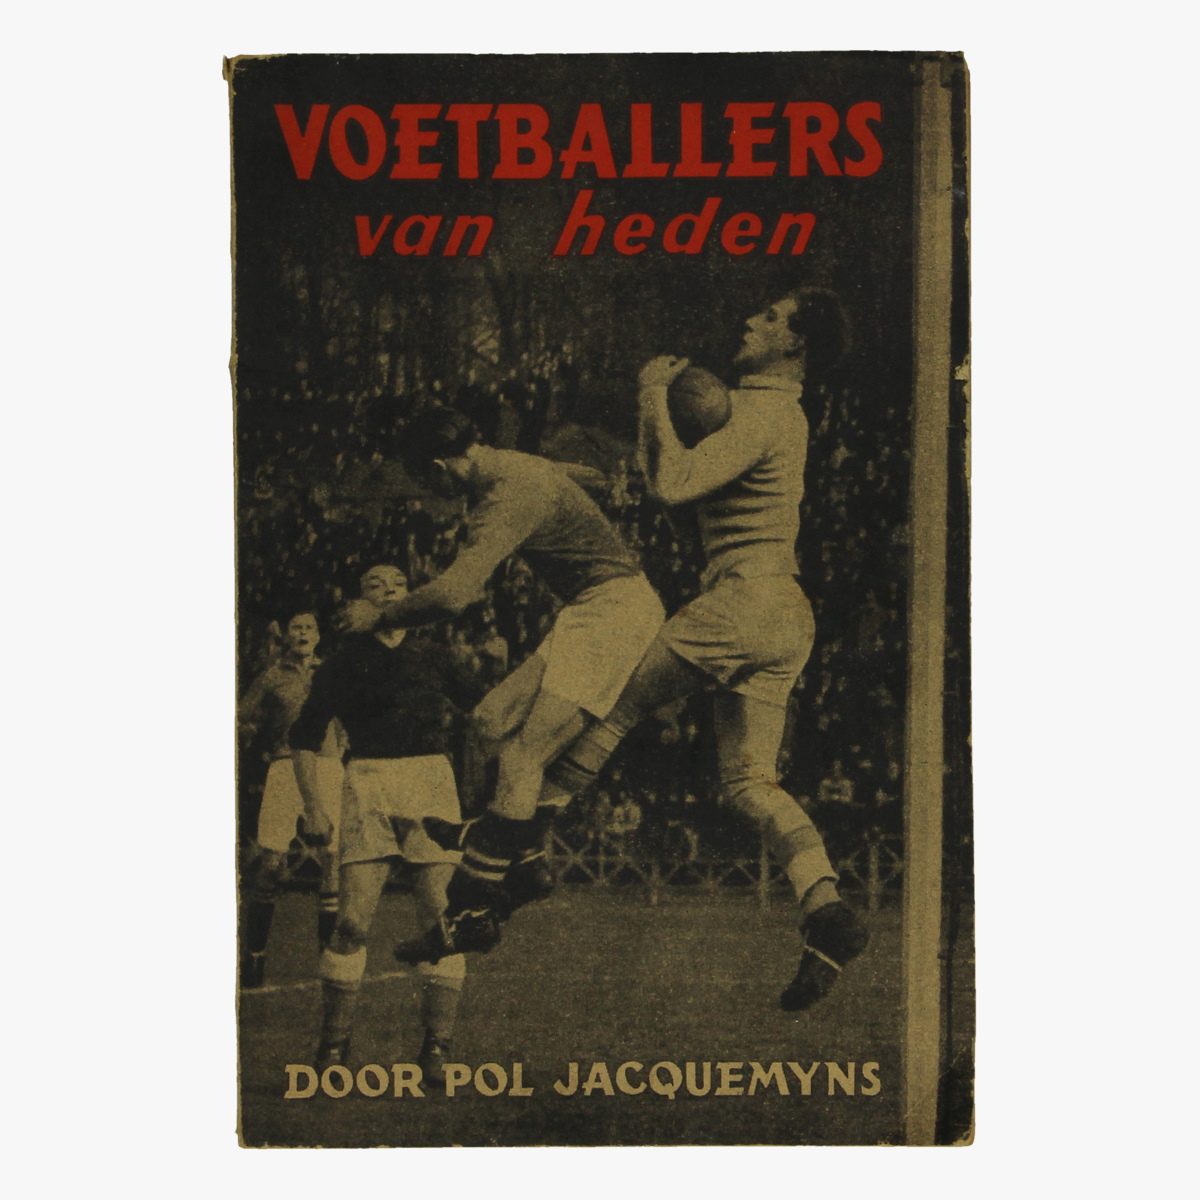 Afbeeldingen van 1943 voetballers van heden door pol jacquemyns